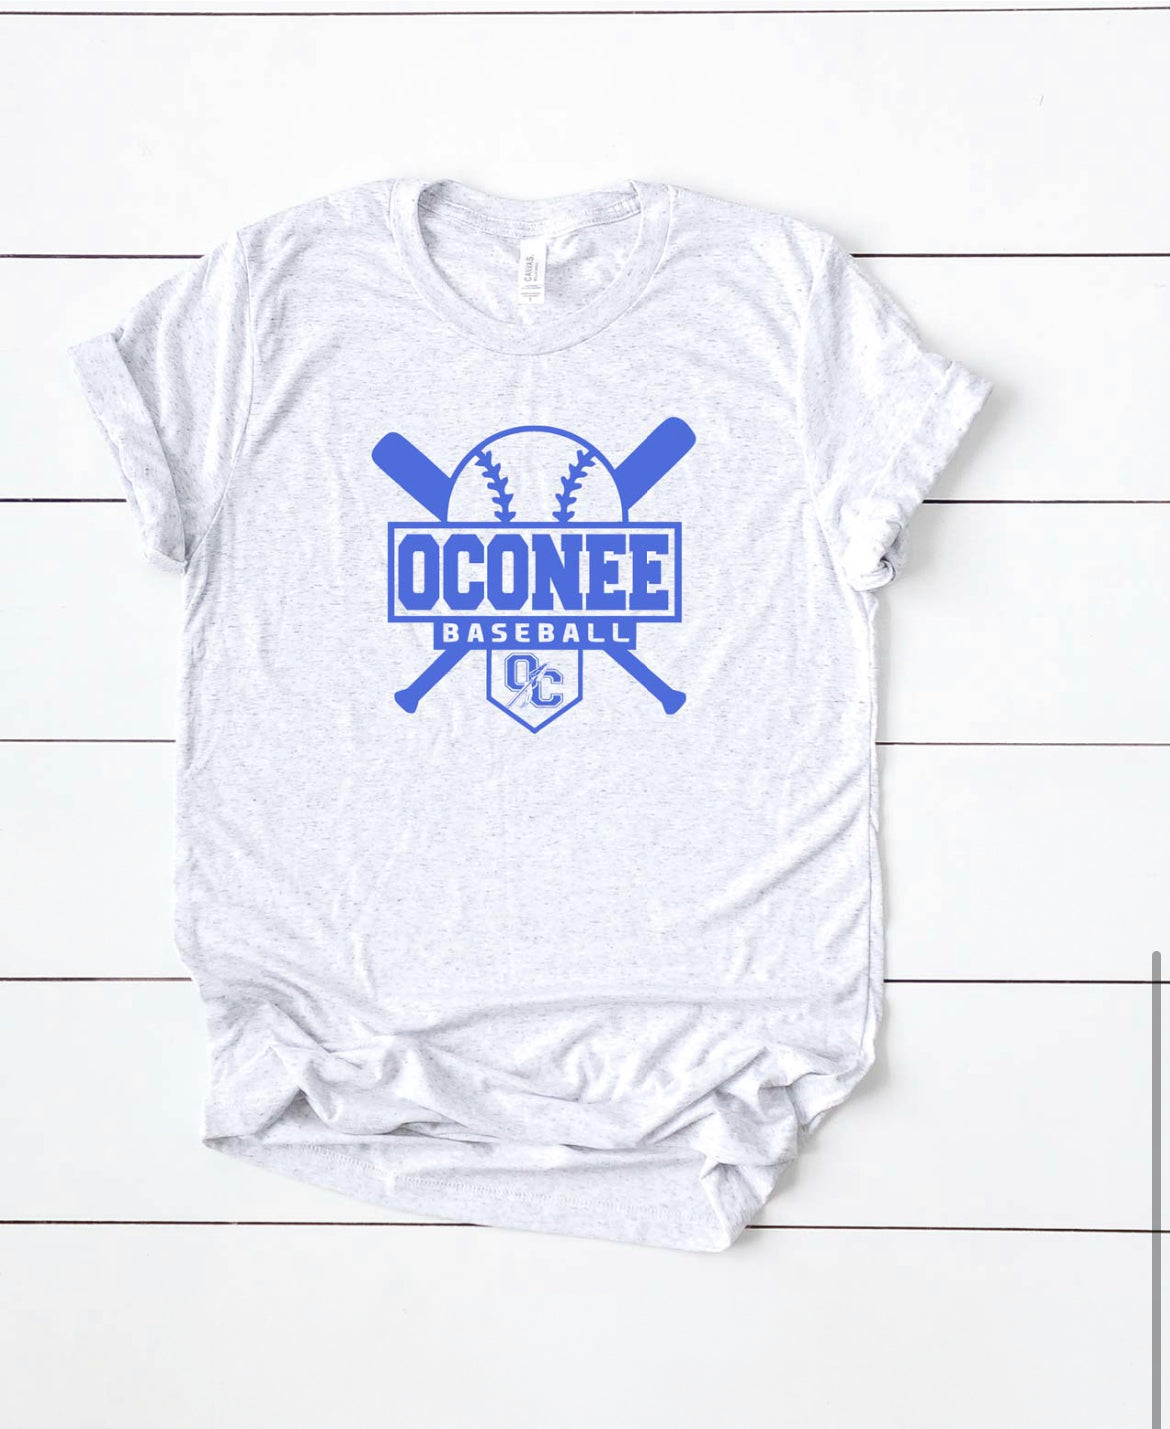 Oconee Baseball Vintage